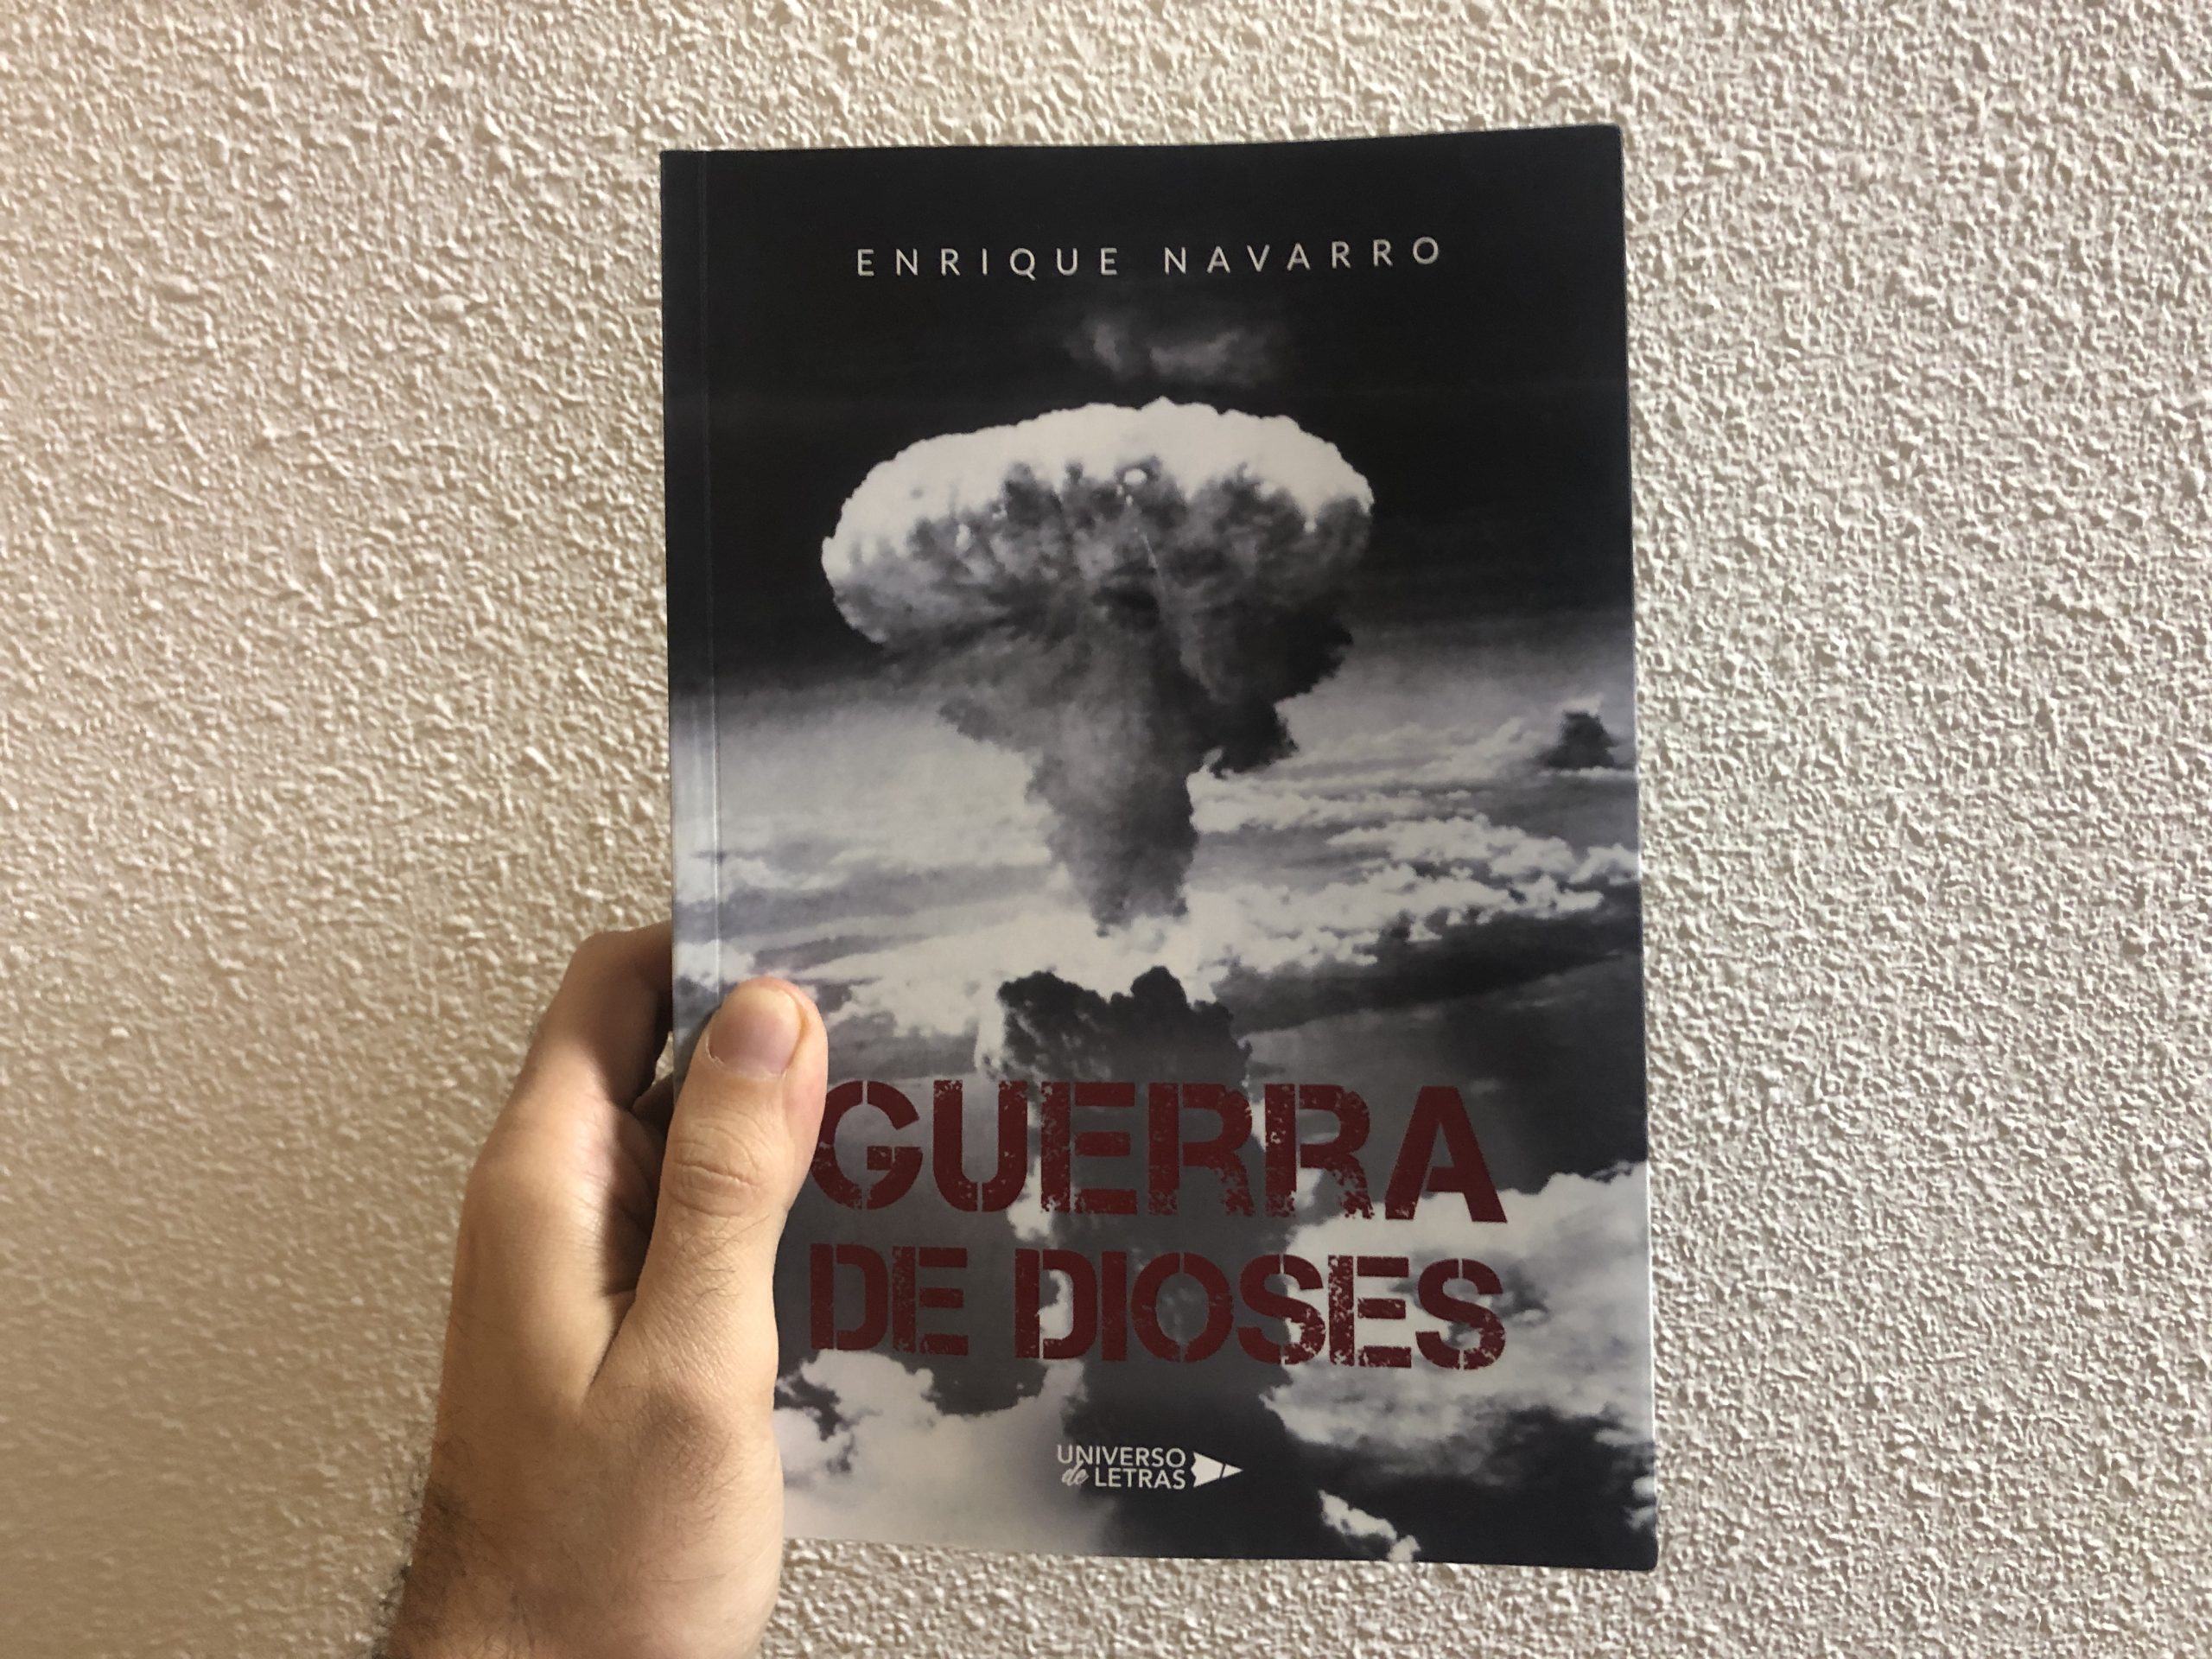 Reseña de “Guerra de dioses”, de Enrique Navarro | Por Mario Herrero